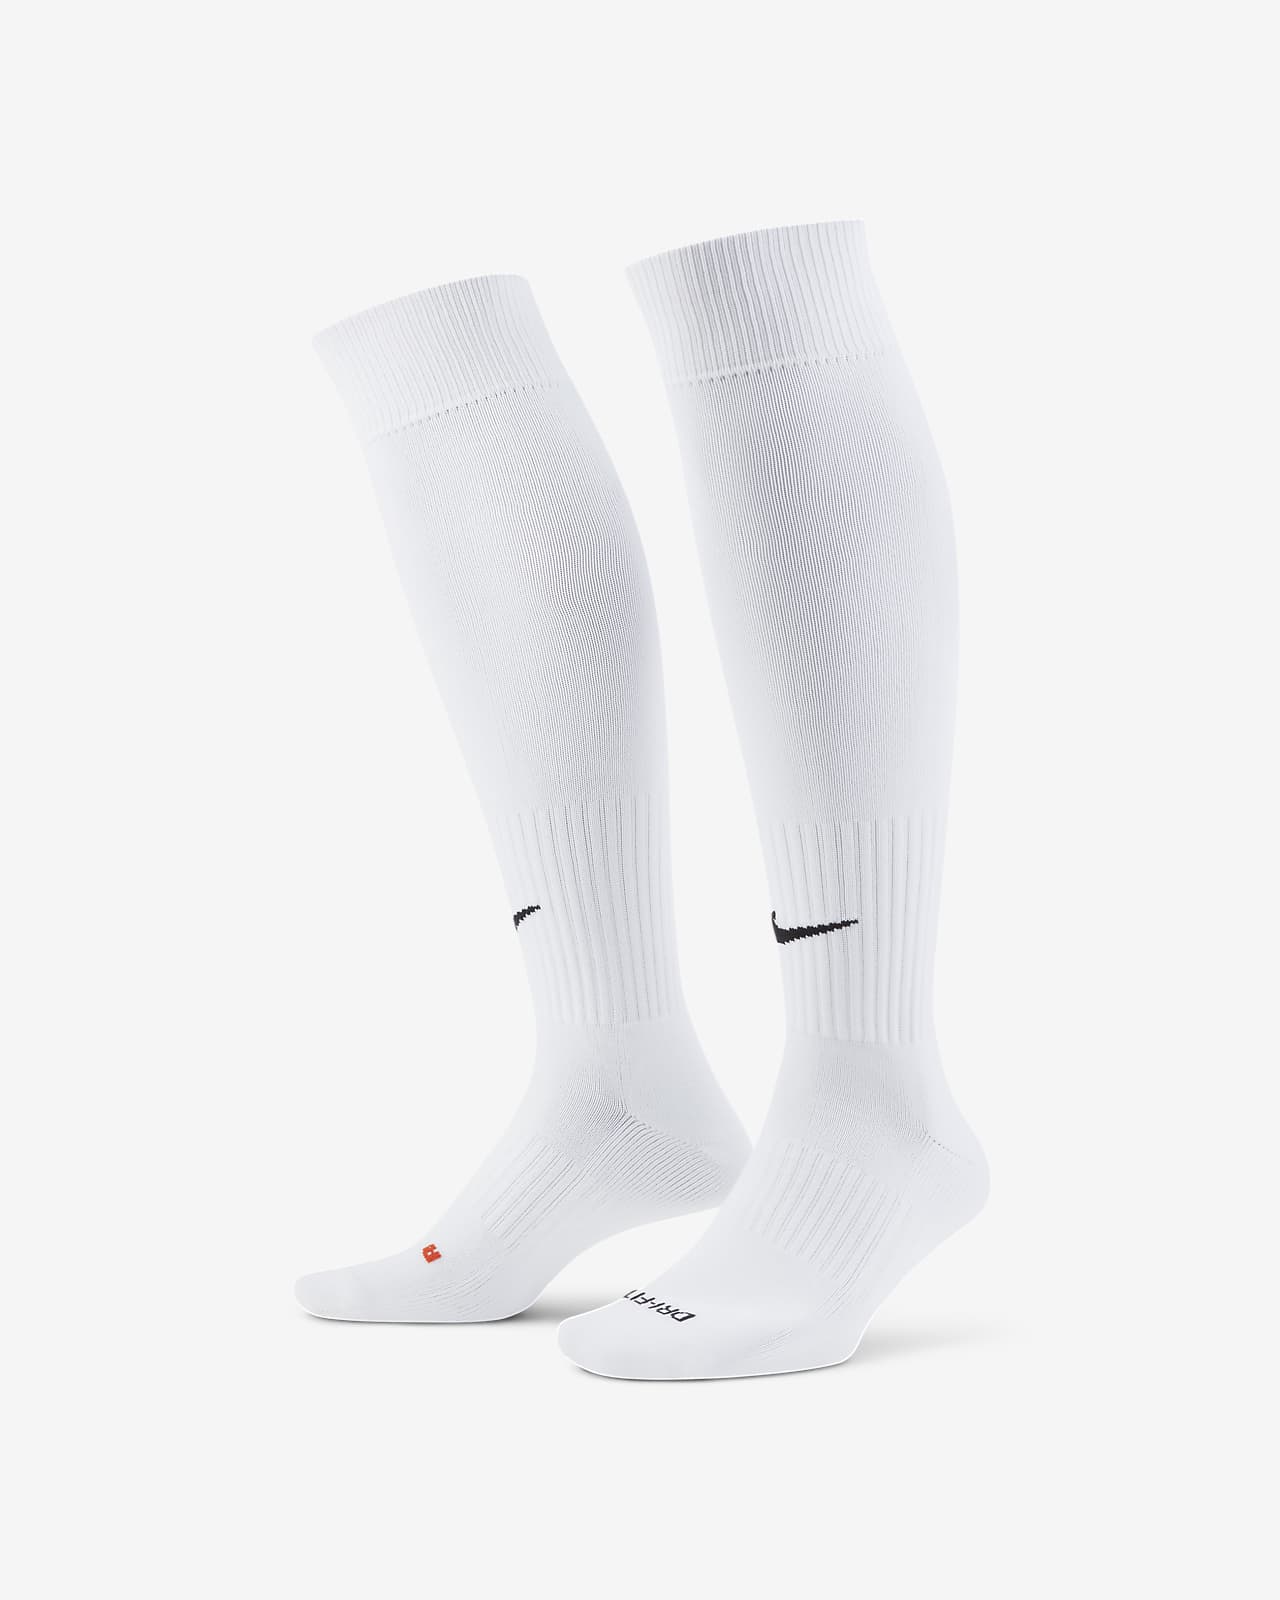 nike knee high soccer socks